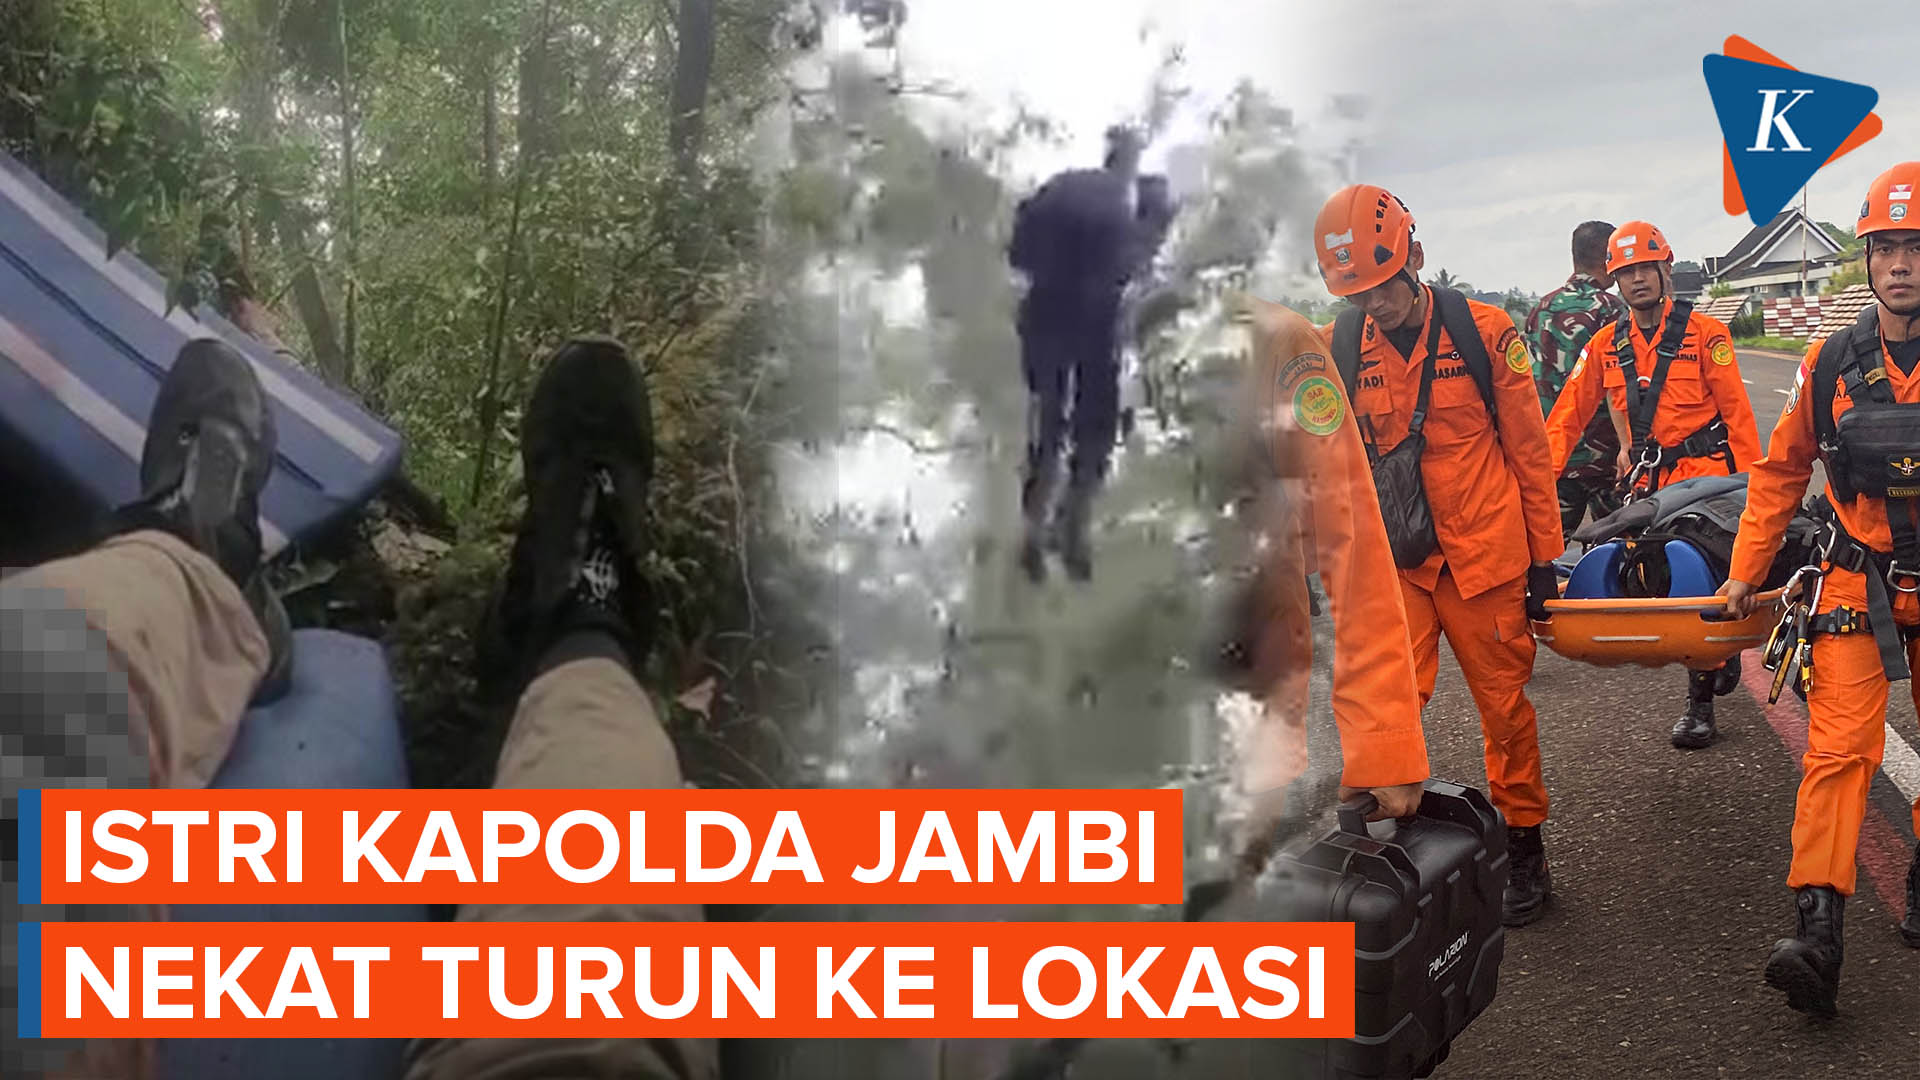 Istri Kapolda Jambi Ikut ke Lokasi Helikopter Mendarat Darurat, Berhasil Turun Bersama Tim SAR